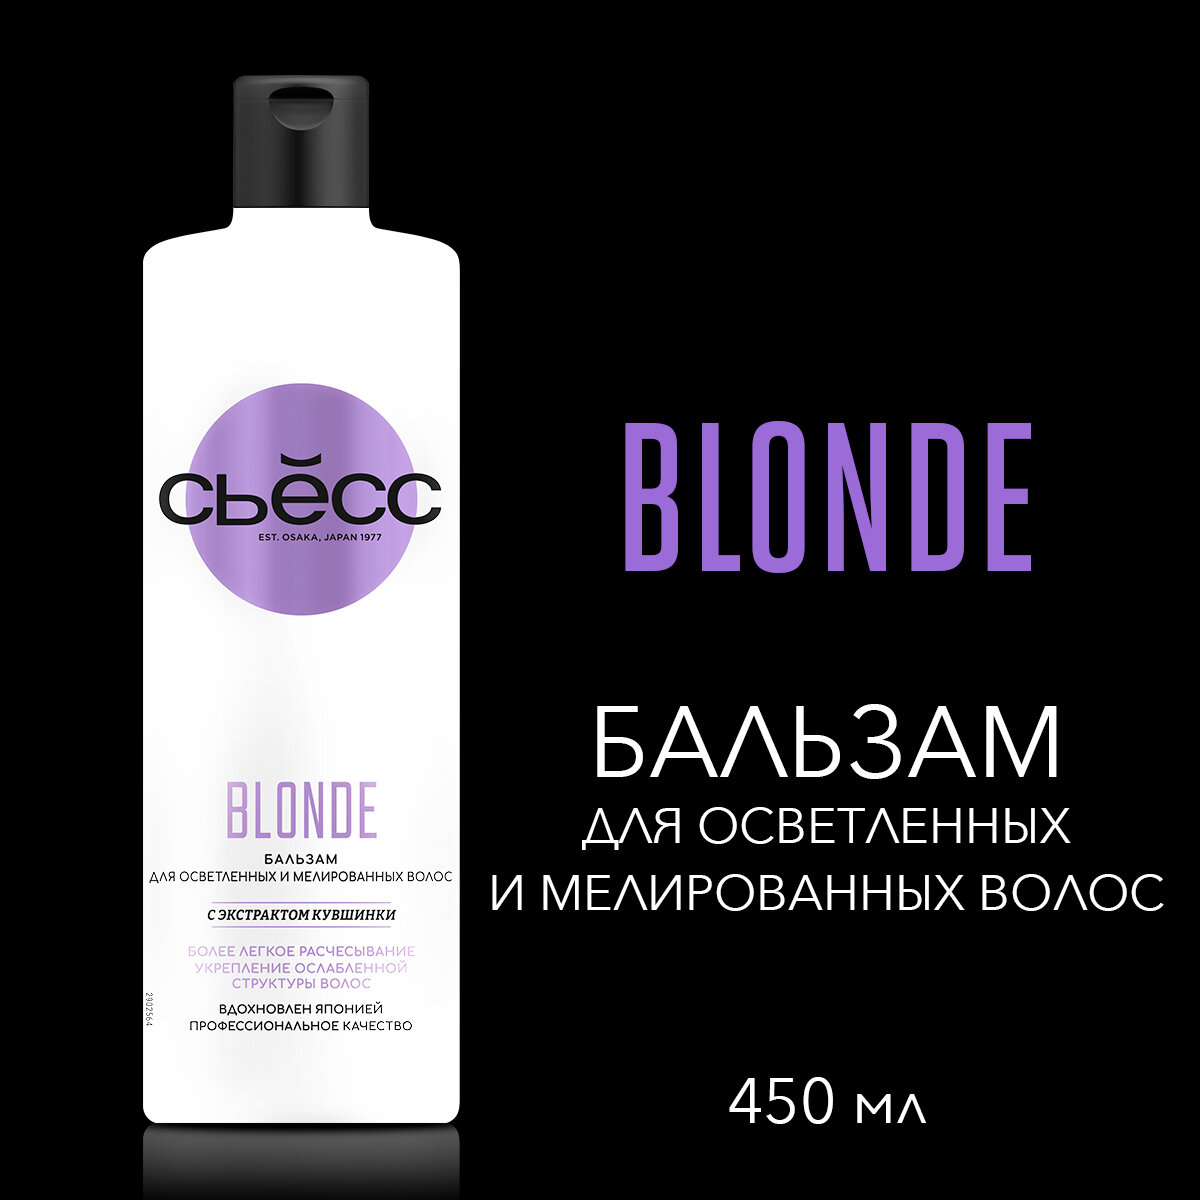 СЬЕСС Бальзам женский Blonde для осветленных и мелированных волос, укрепляет ослабленную структуру волос, 450 мл